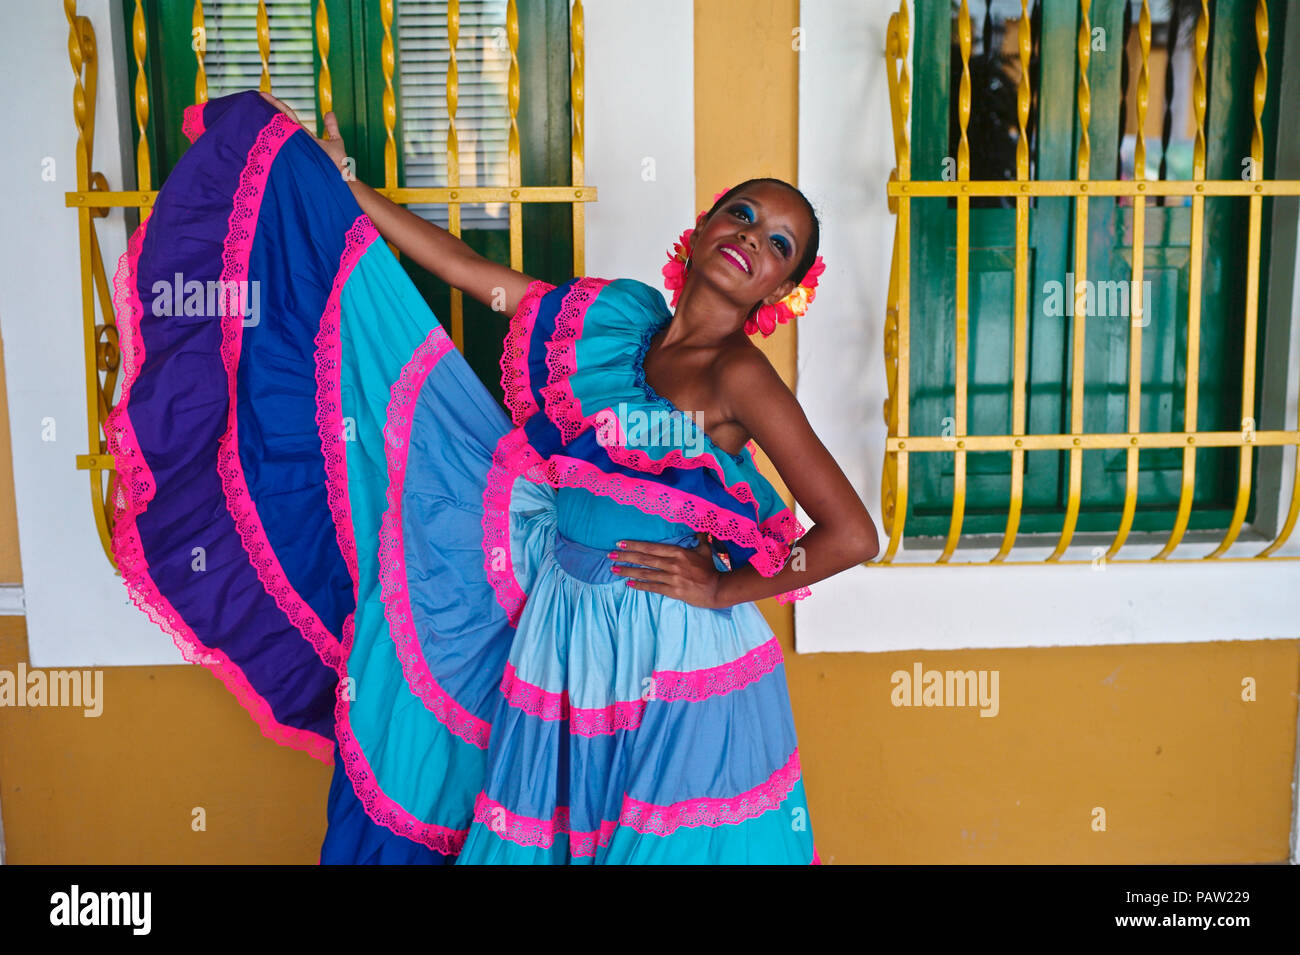 Cumbia dancer Stock Photo